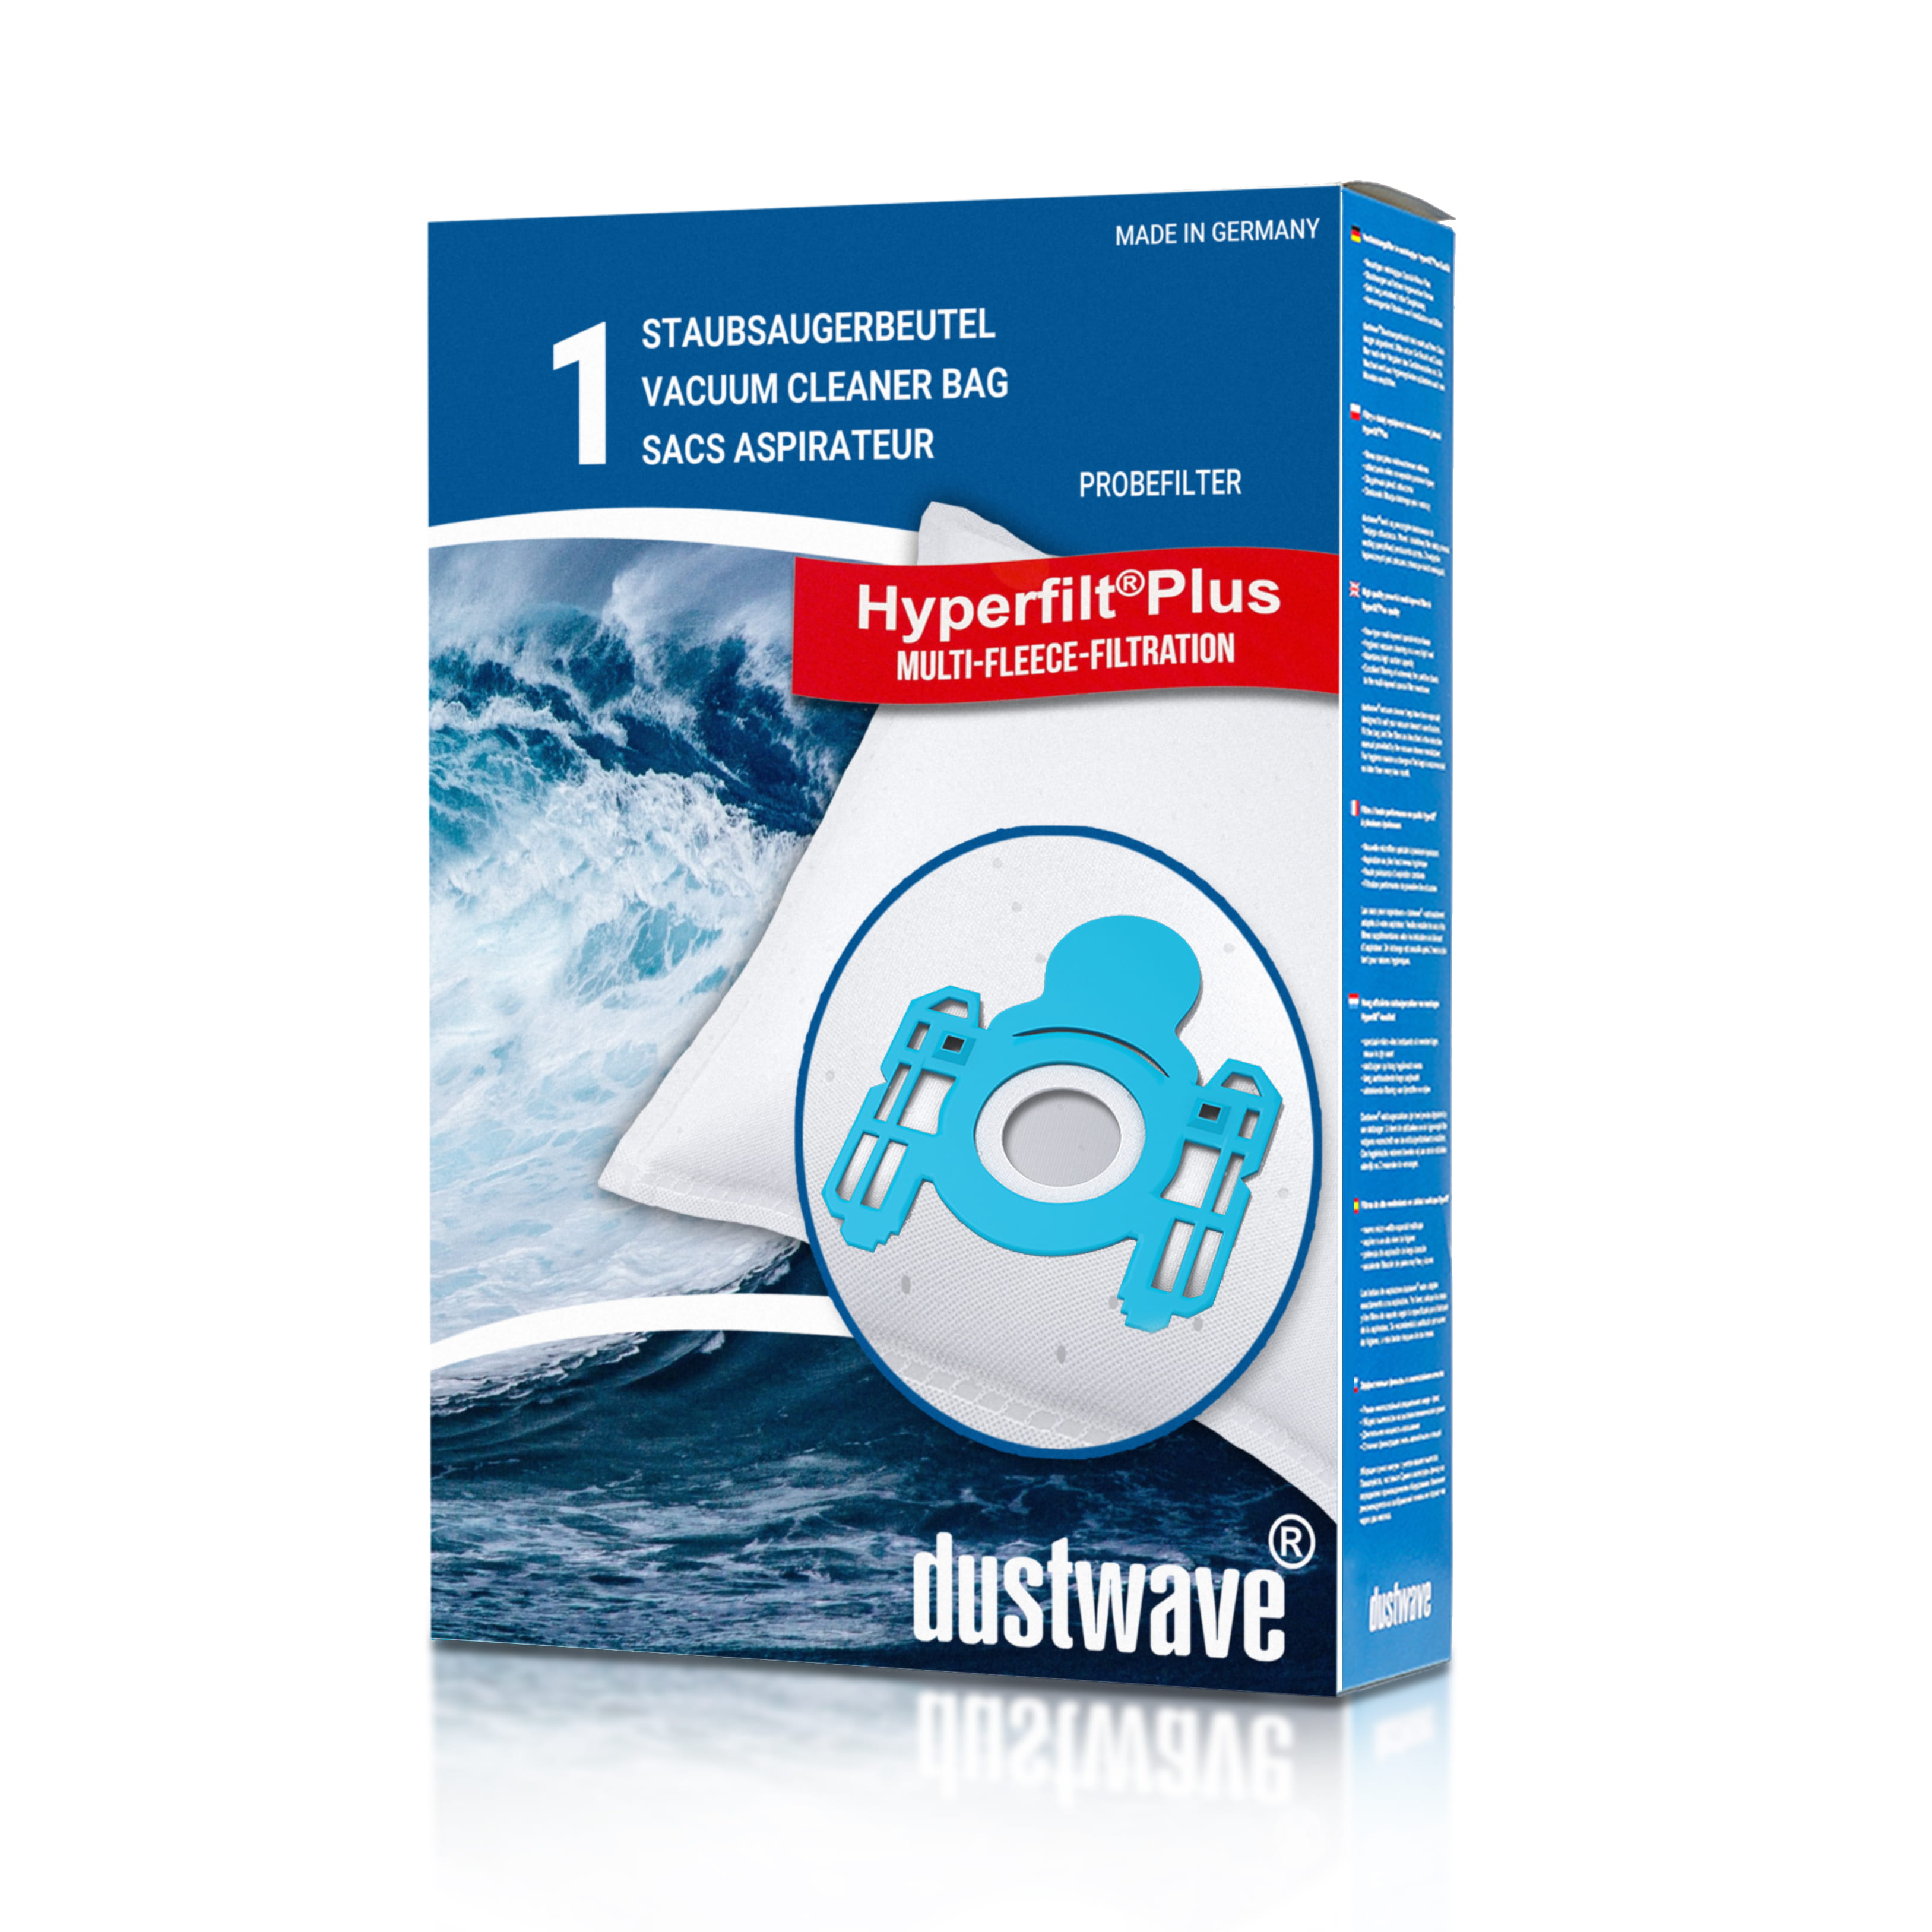 Dustwave® 1 Staubsaugerbeutel für AEG Vampyr 5090.0 - hocheffizient, mehrlagiges Mikrovlies mit Hygieneverschluss - Made in Germany